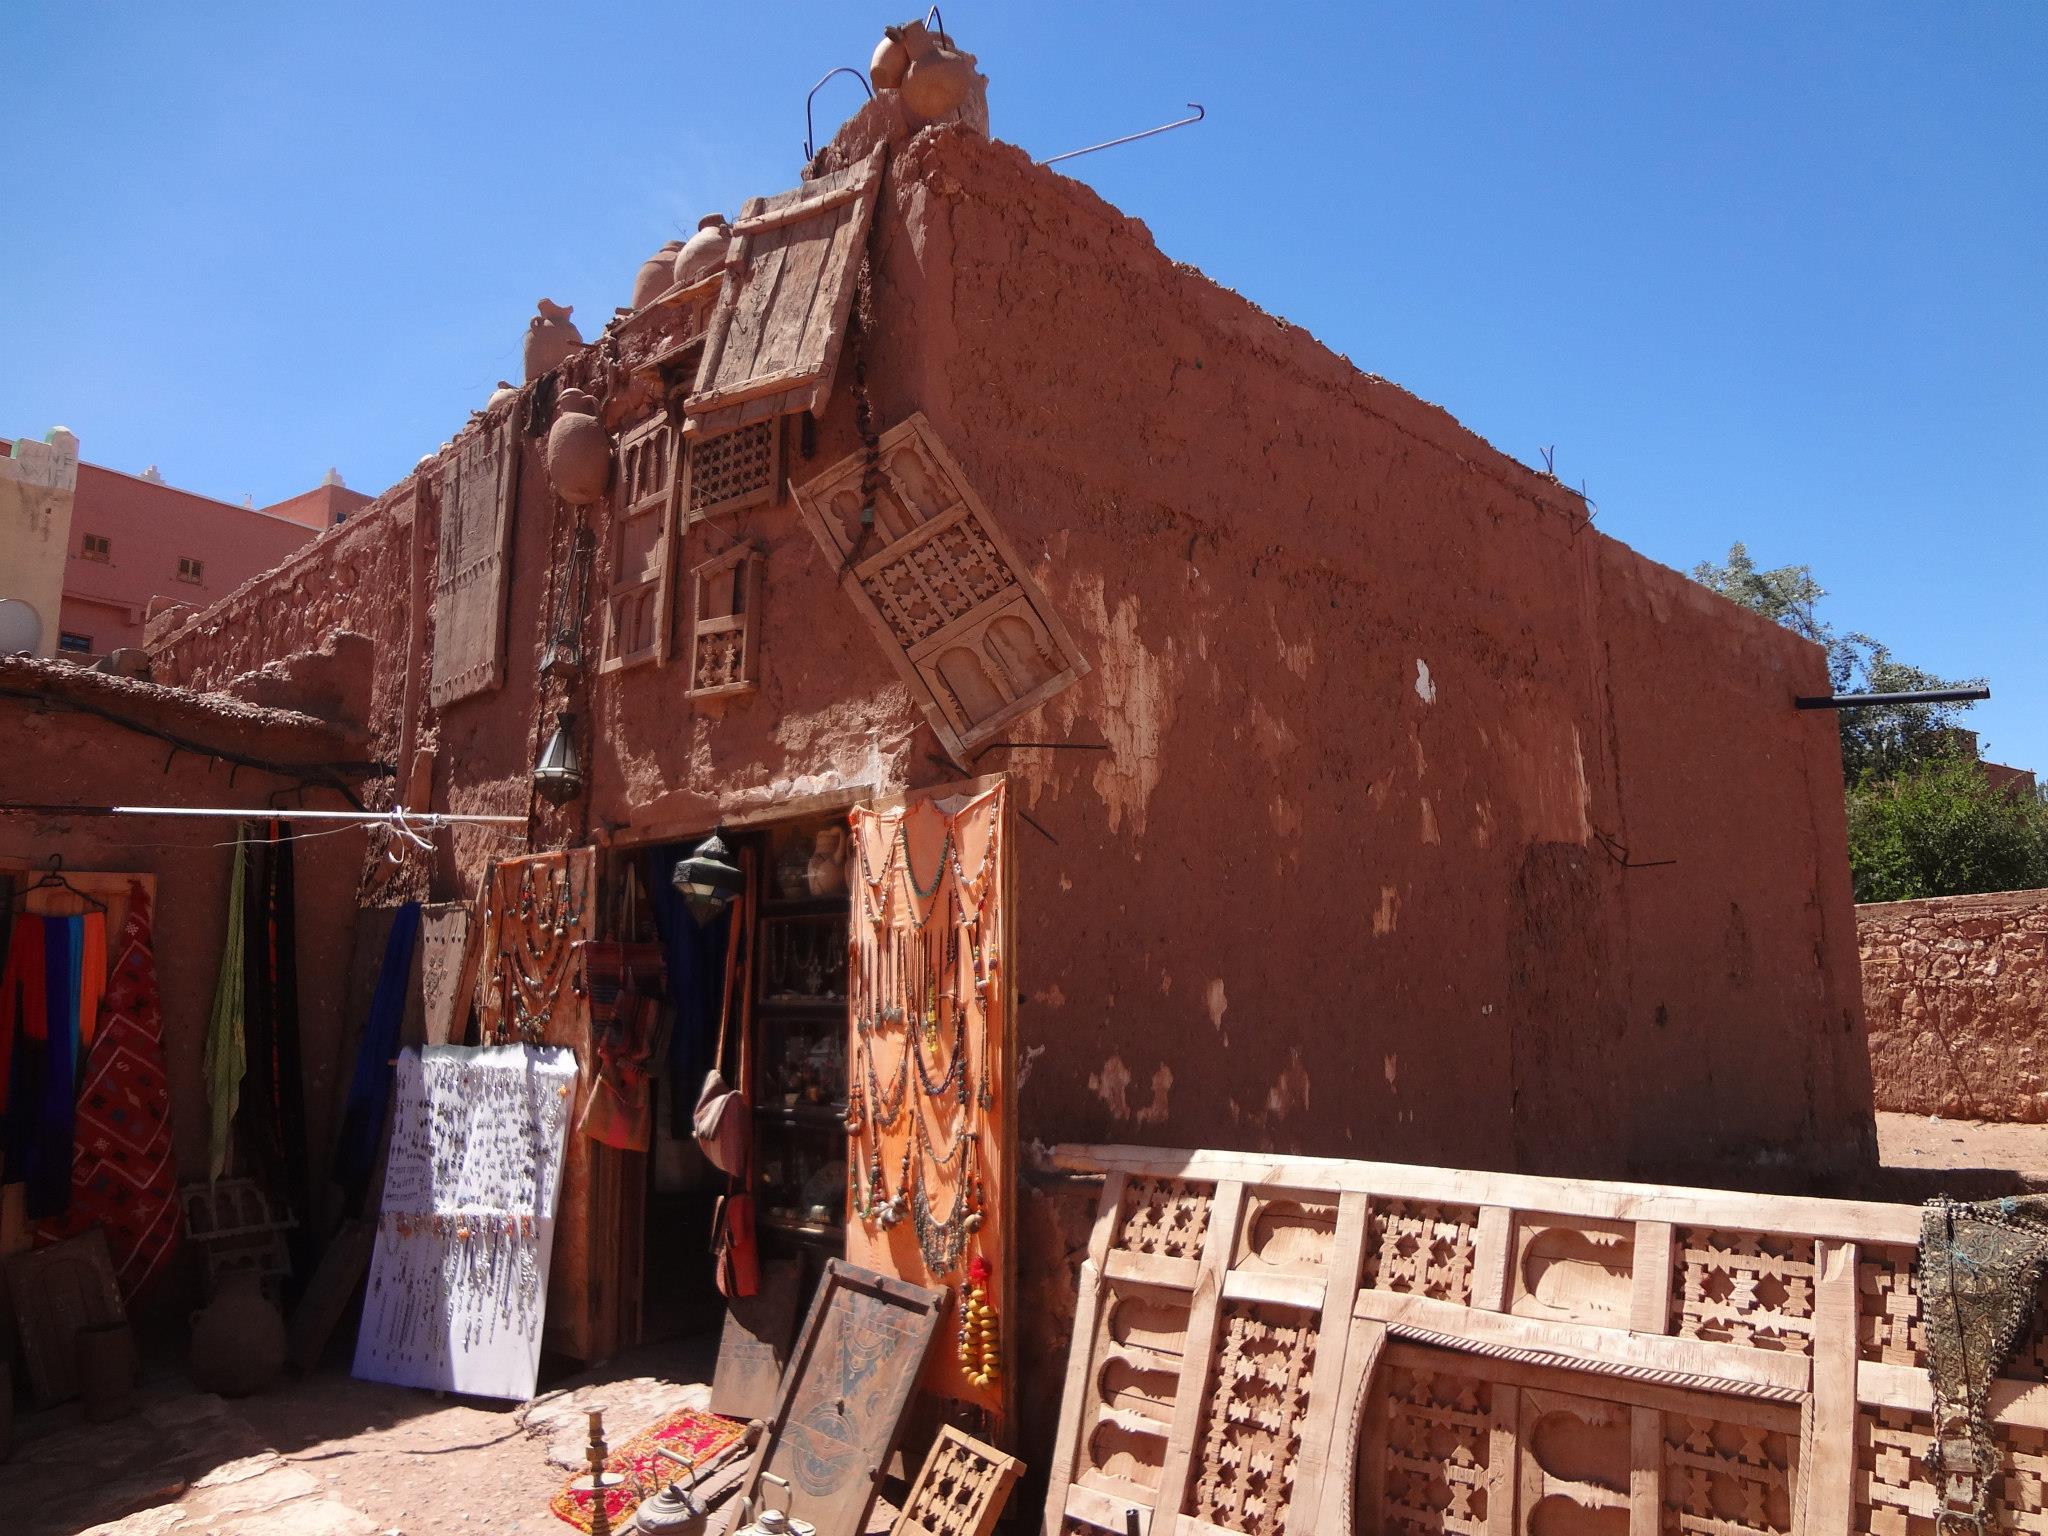 Tienda de artesania en Ait Benhaddou